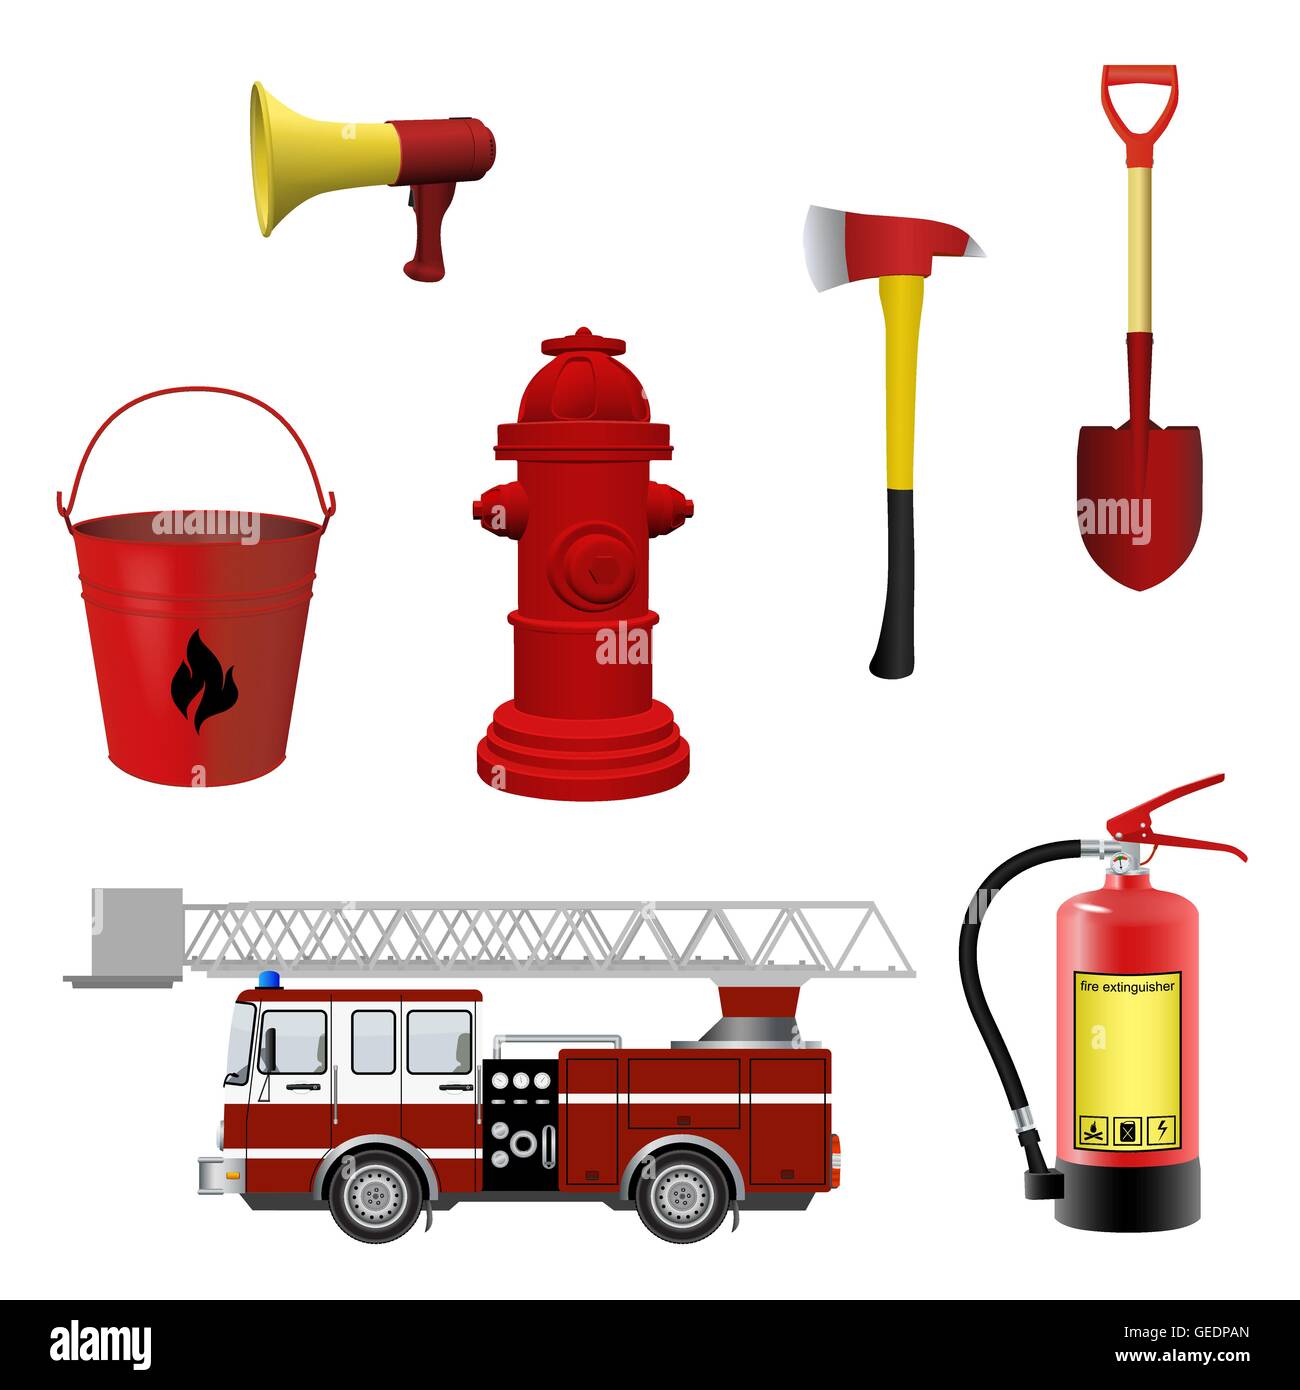 Feuerwehr Ausrüstung legen. Vektor-Illustration Stock-Vektorgrafik